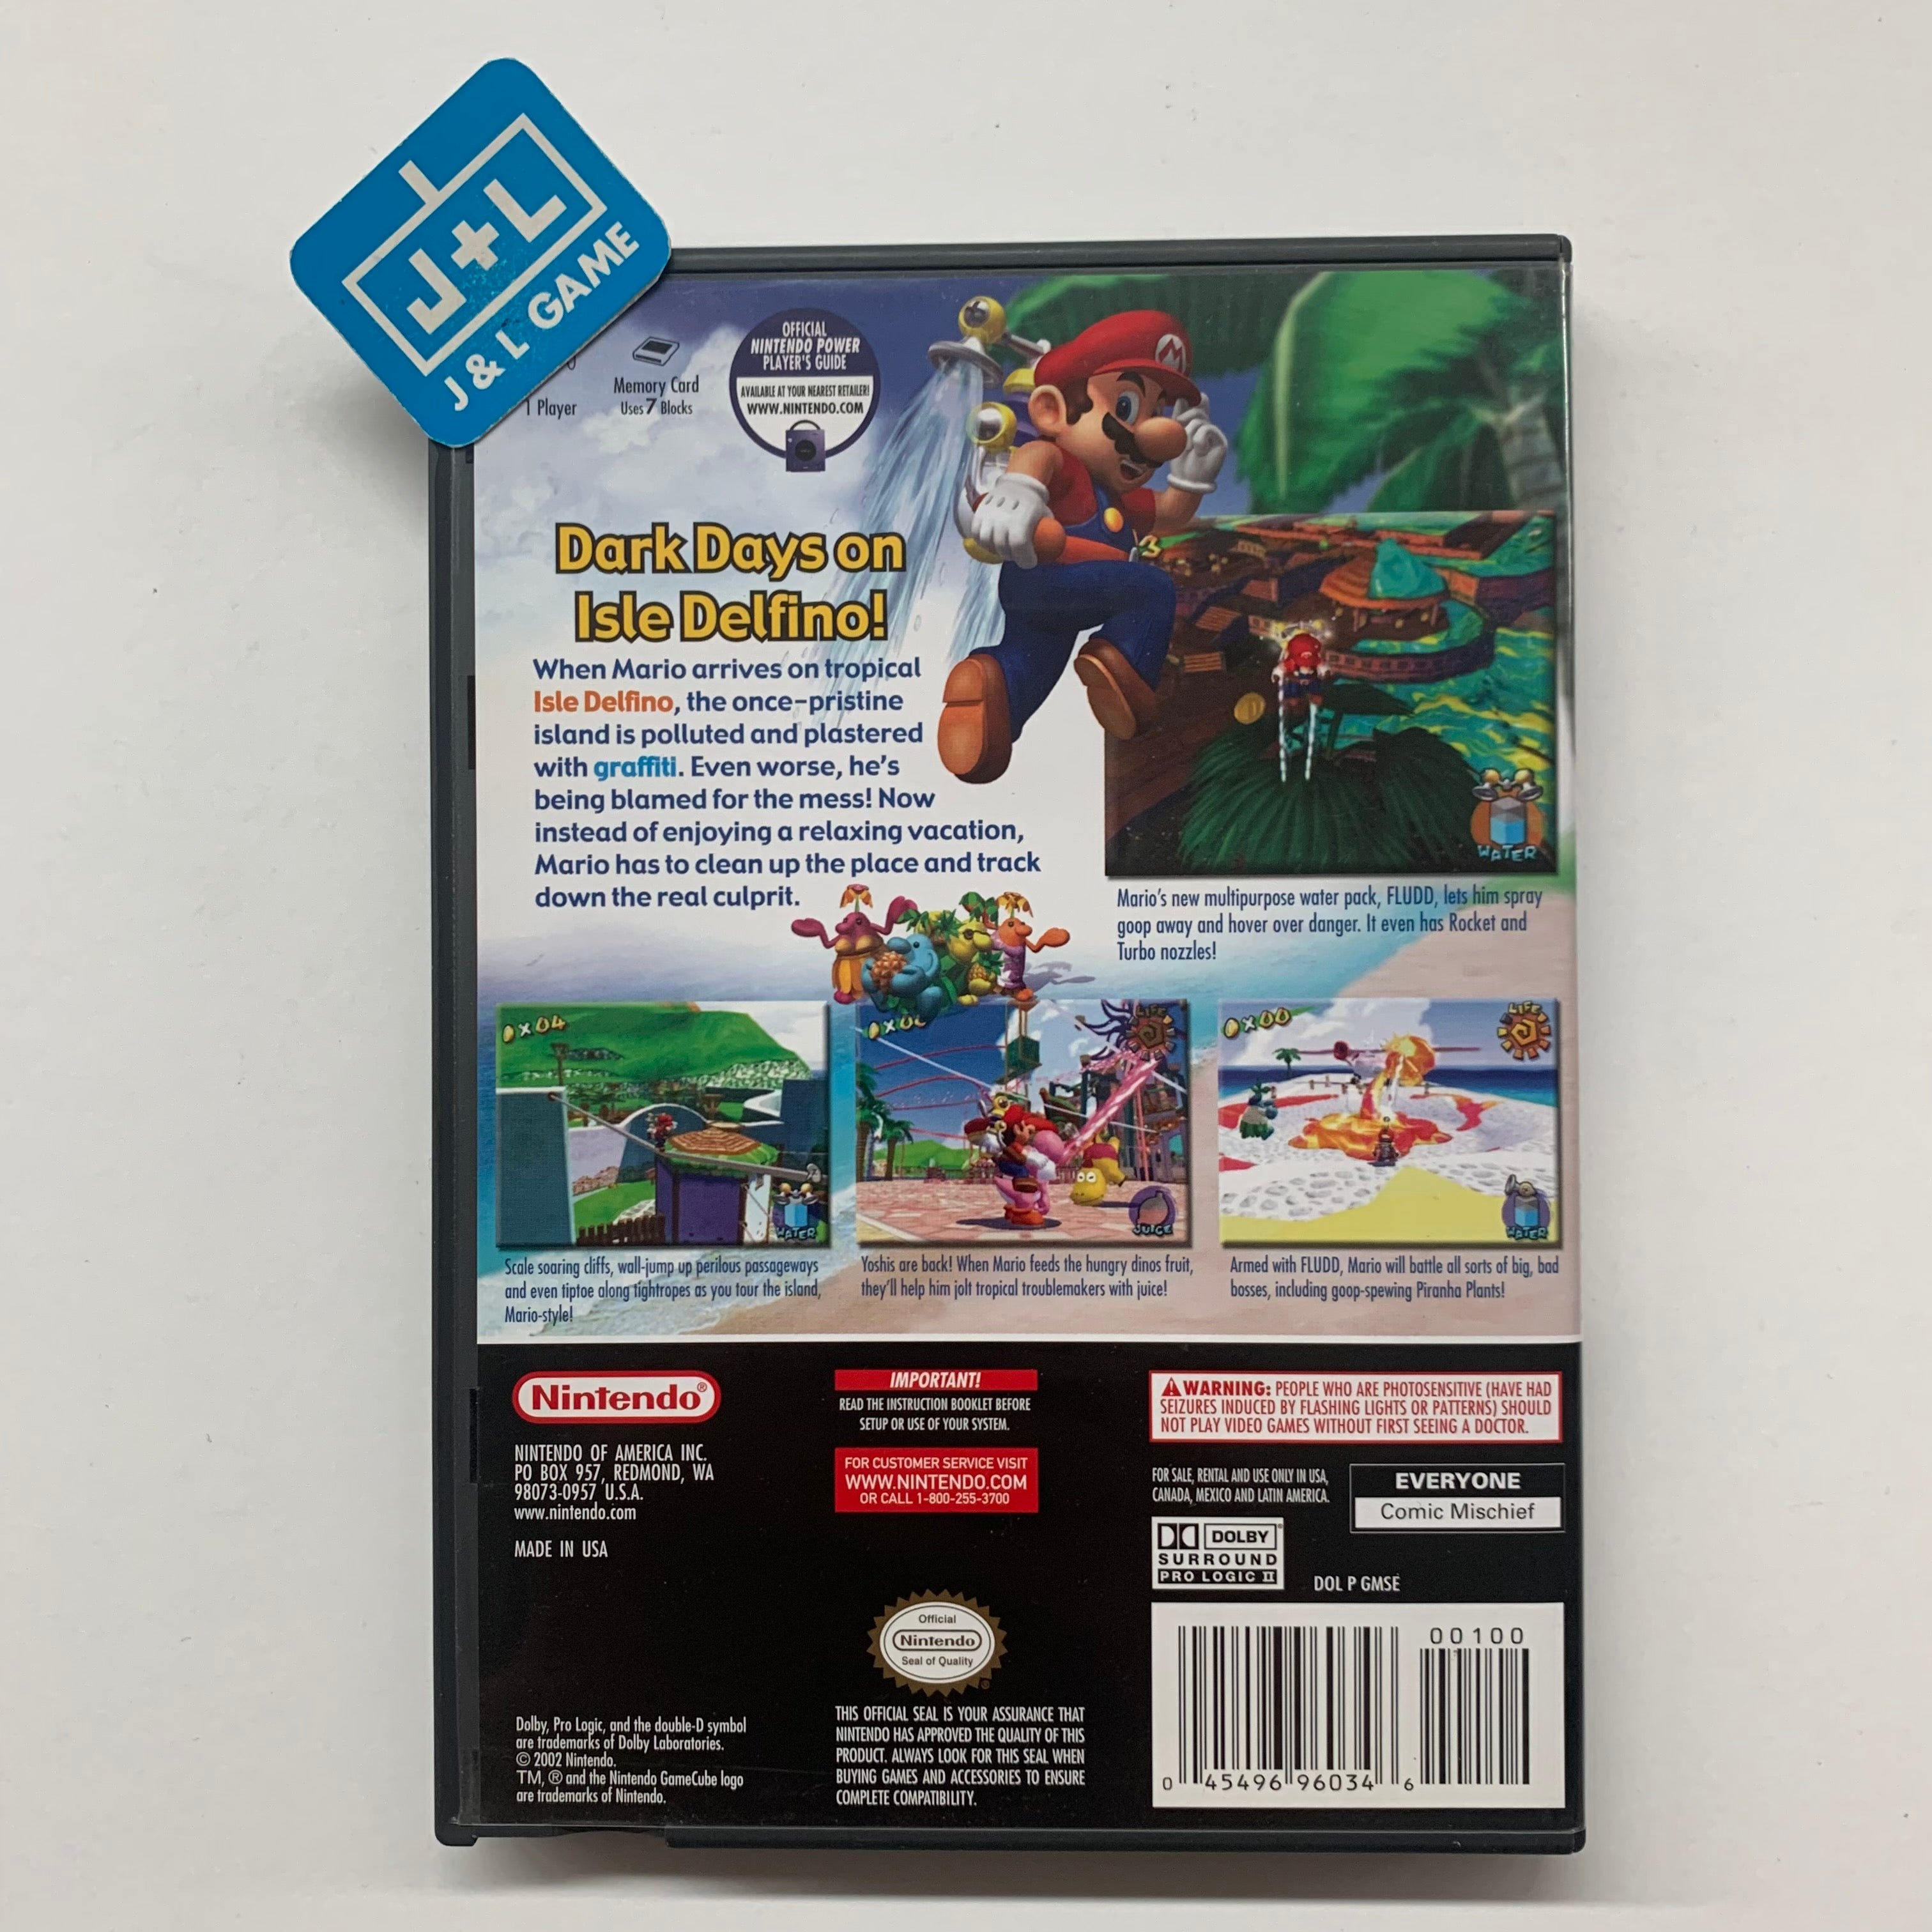 Super Mario Sunshine - (GC) GameCube [Pre-Owned] Video Games Nintendo   